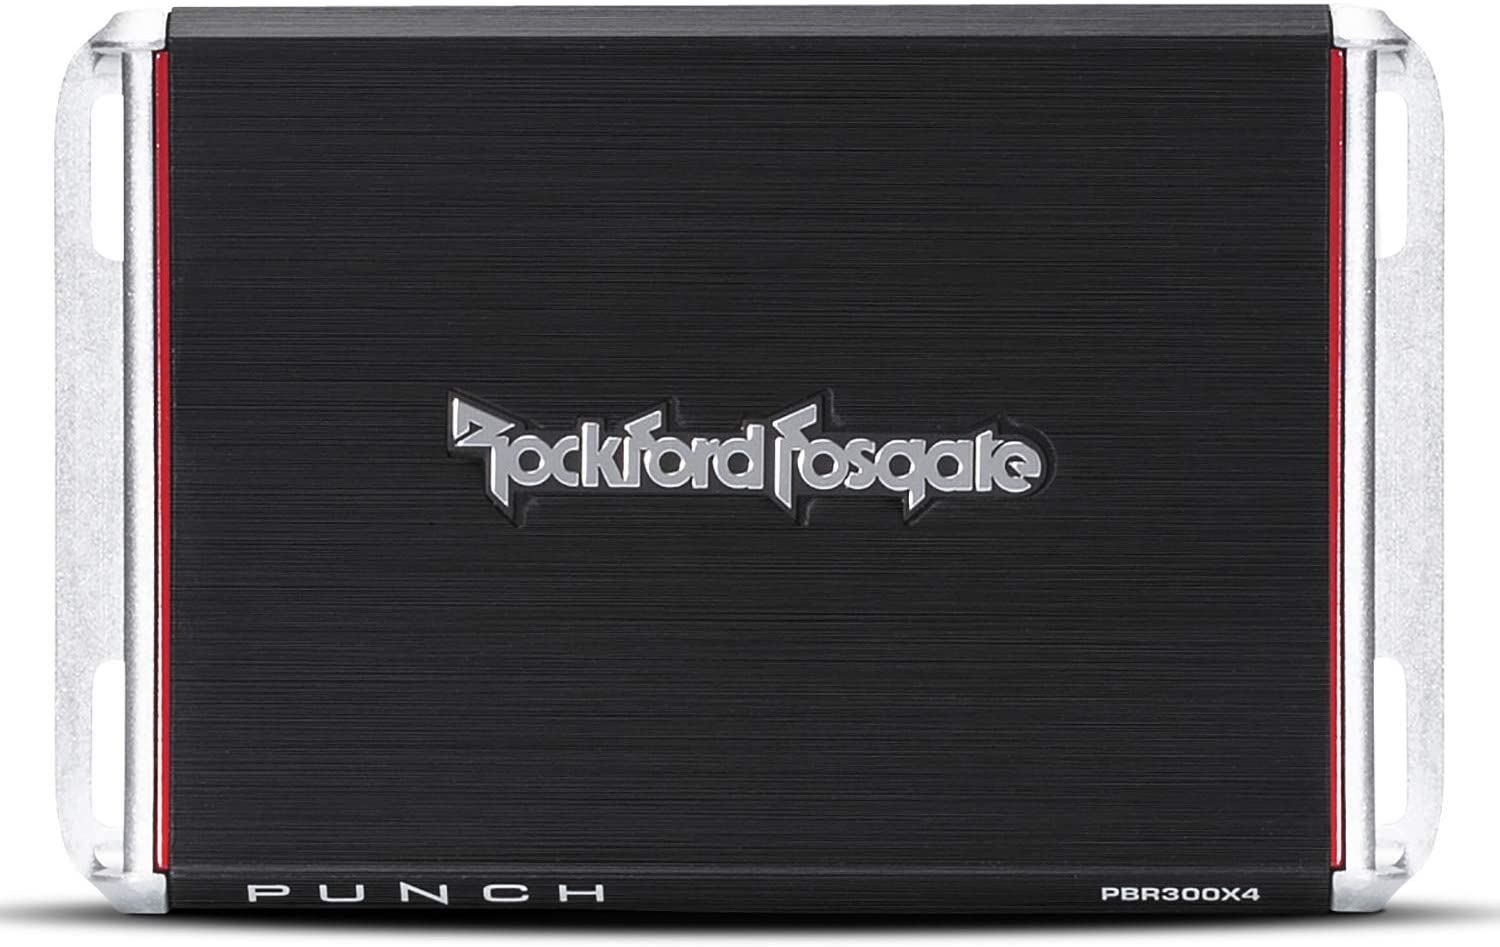 Rockford Fosgate PBR300X4 Amplifier Best 4 Channel Amplifiers Under $200